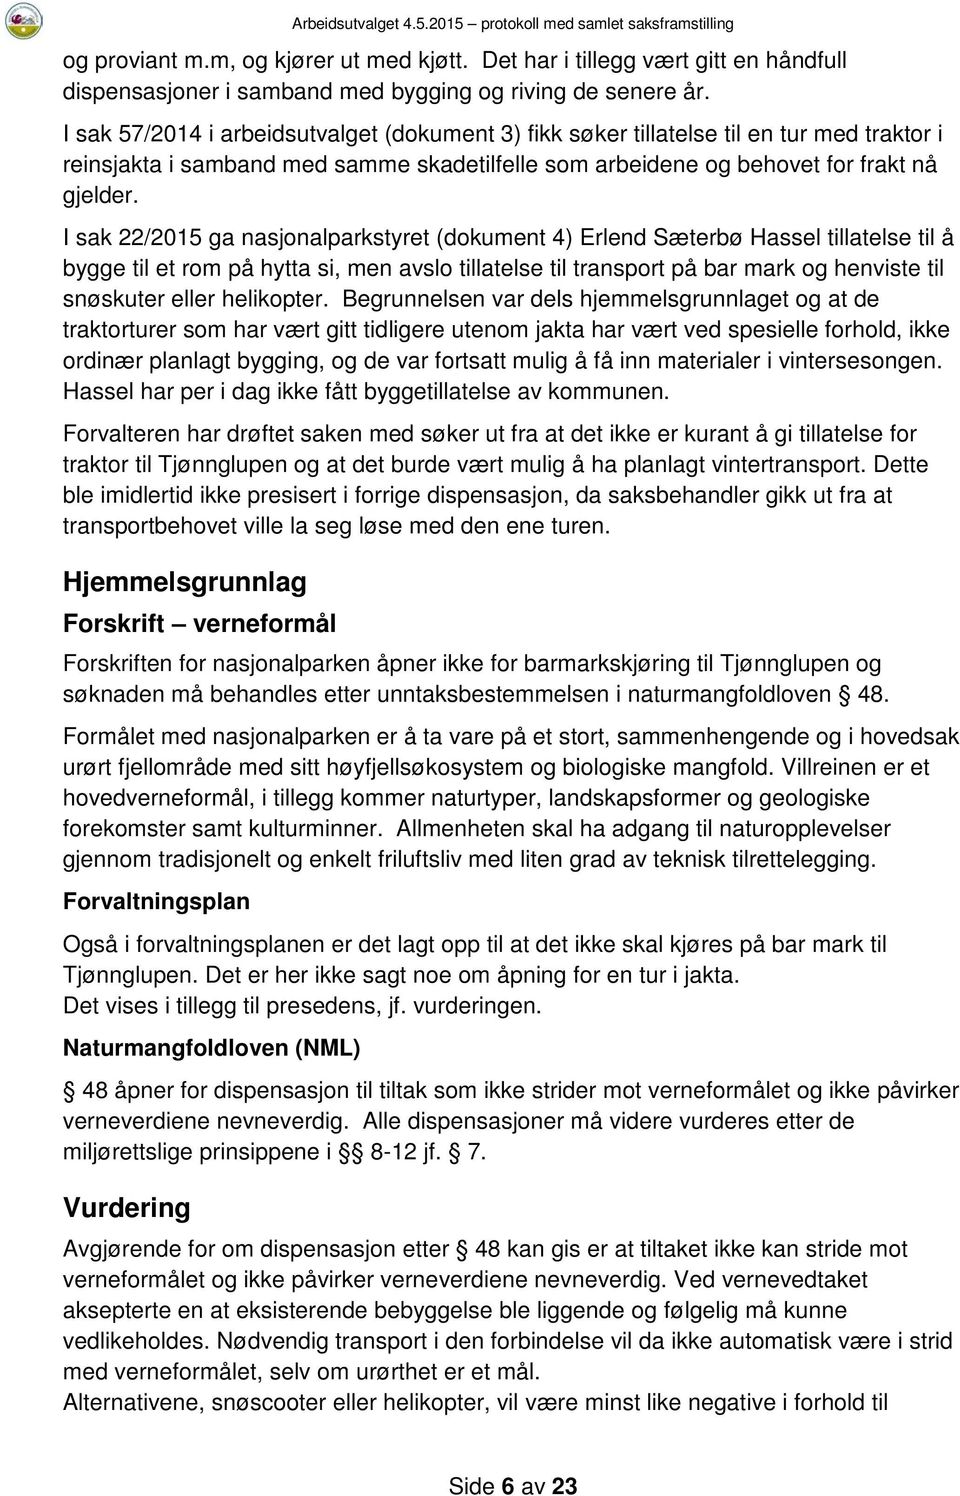 I sak 22/2015 ga nasjonalparkstyret (dokument 4) Erlend Sæterbø Hassel tillatelse til å bygge til et rom på hytta si, men avslo tillatelse til transport på bar mark og henviste til snøskuter eller